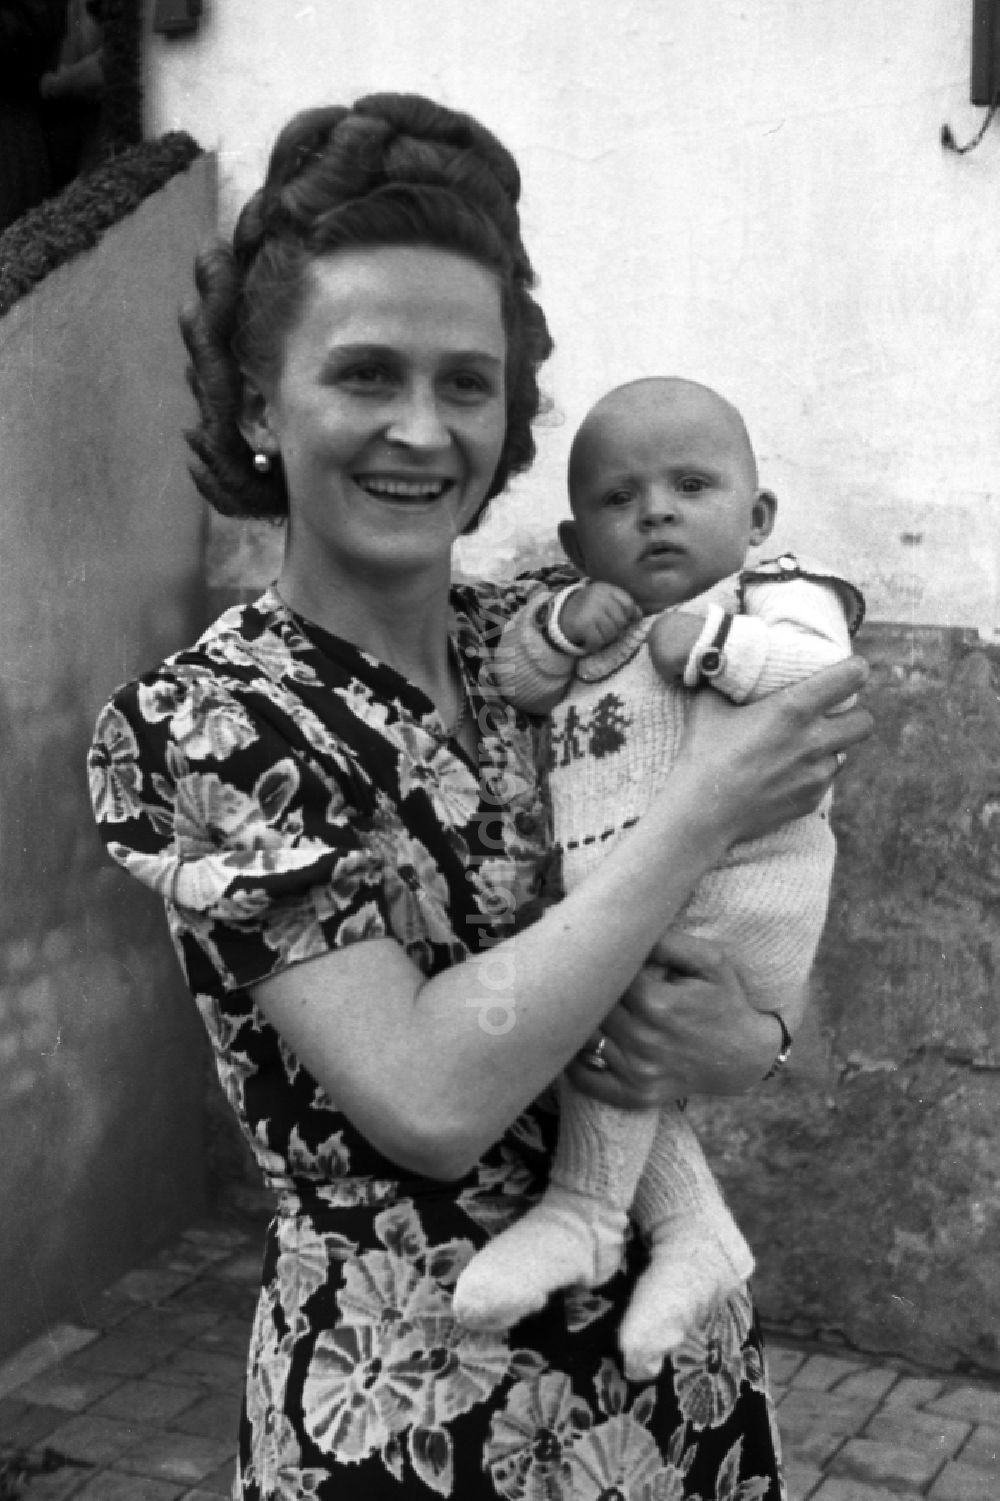 Merseburg: Frau mit Baby auf dem Arm in Merseburg in Sachsen-Anhalt in der DDR